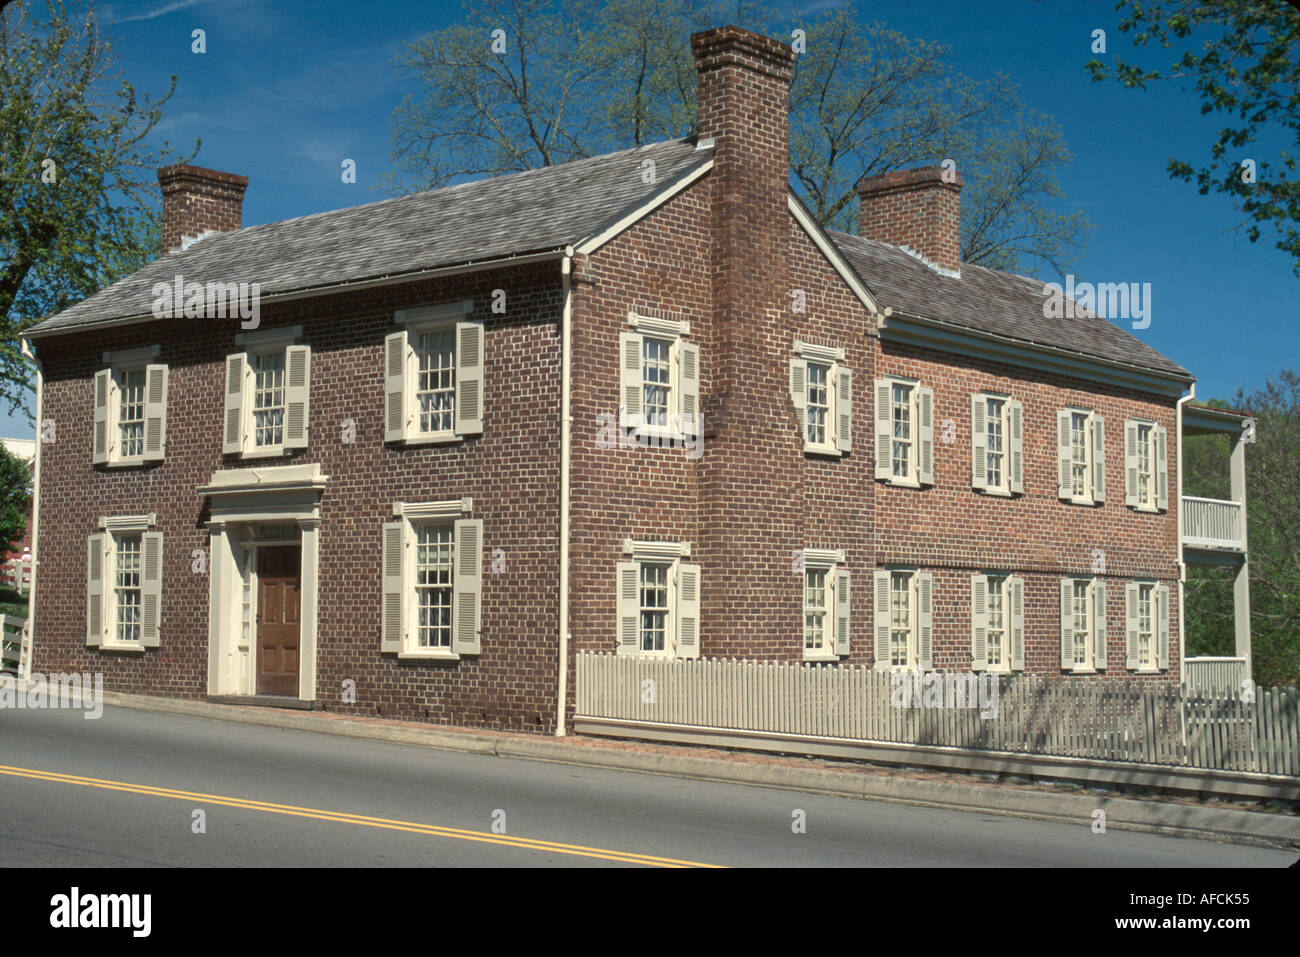 Le site historique de Greeneville Andrew Johnson du Tennessee a destitué le président des États-Unis, construit en 1851 propriété TN006,TN006 Banque D'Images